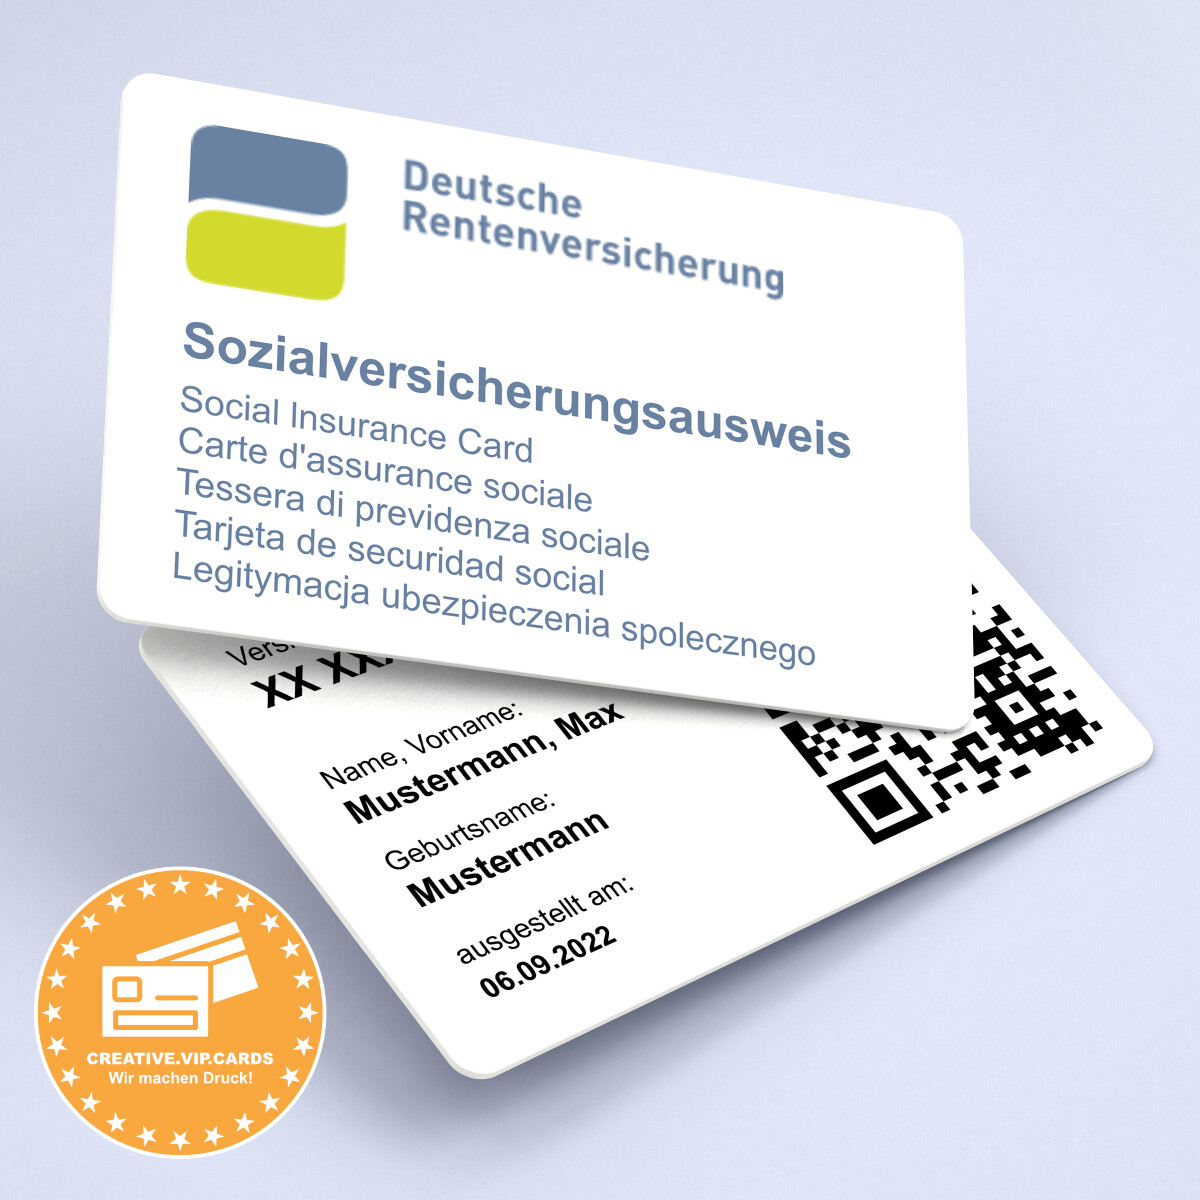 Lassen Sie sich eine Kopie von Ihrem Sozialversicherungsausweis - Deutsche Rentenversicherung auf eine Plastikkarte im Kreditkartenformat drucken